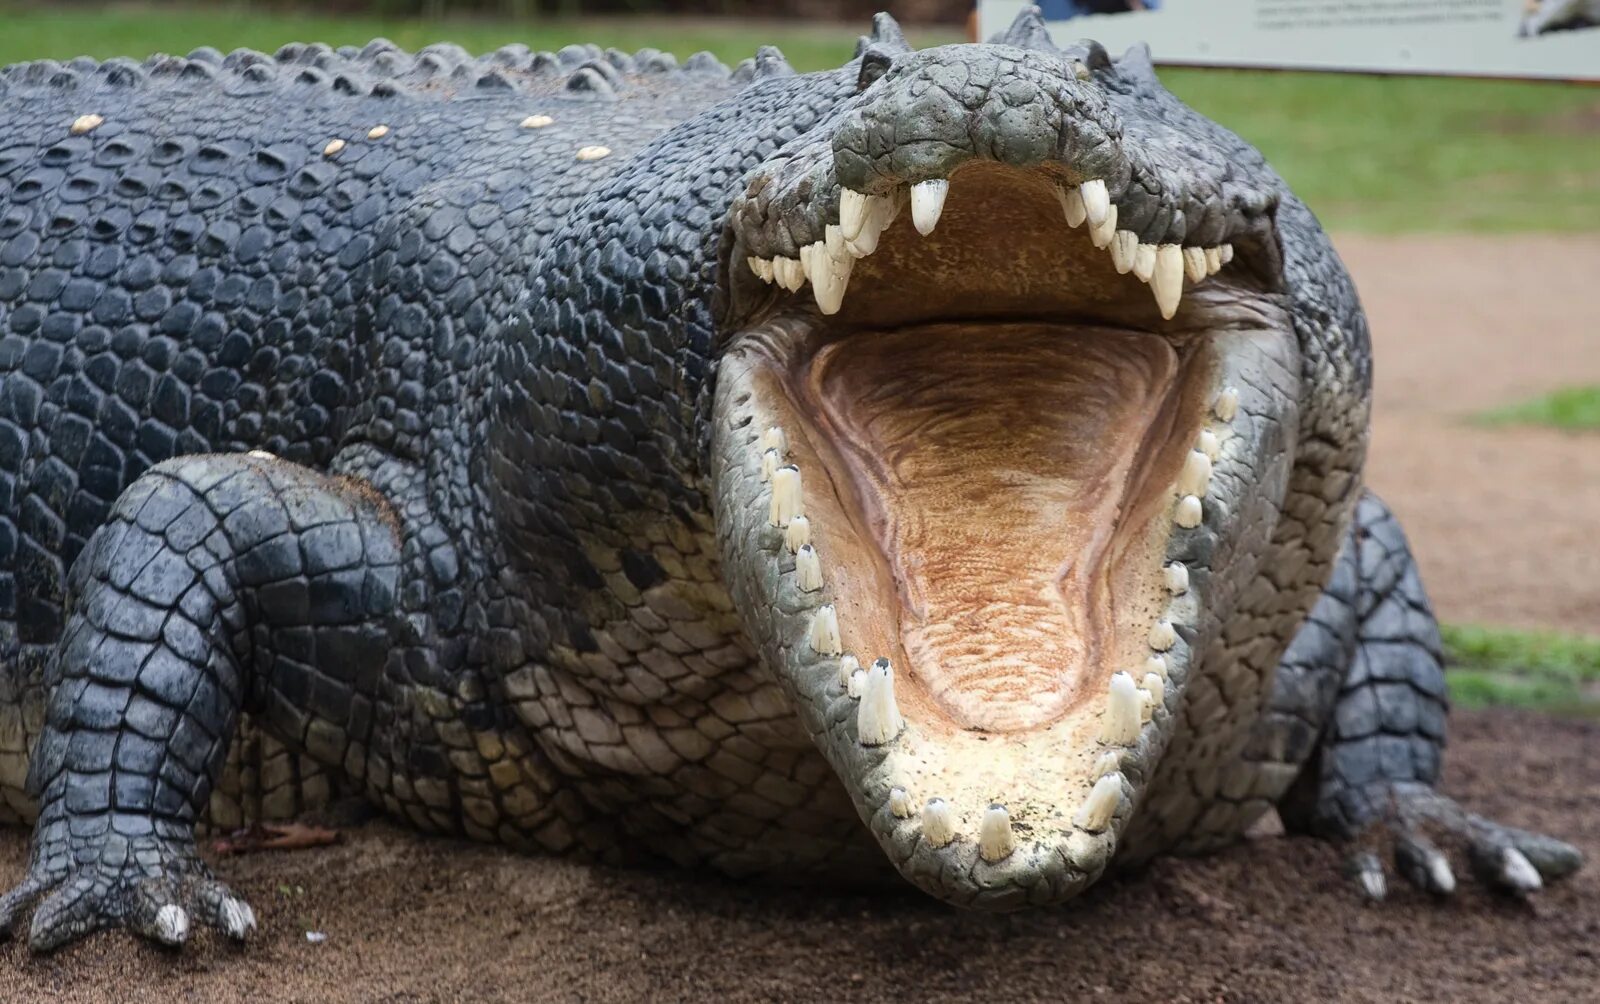 Большая крокодила где послушать. Пасть крокодила. Крокодил с открытой пастью. Крокодил с ра крытой пастью. Аллигатор с открытой пастью.